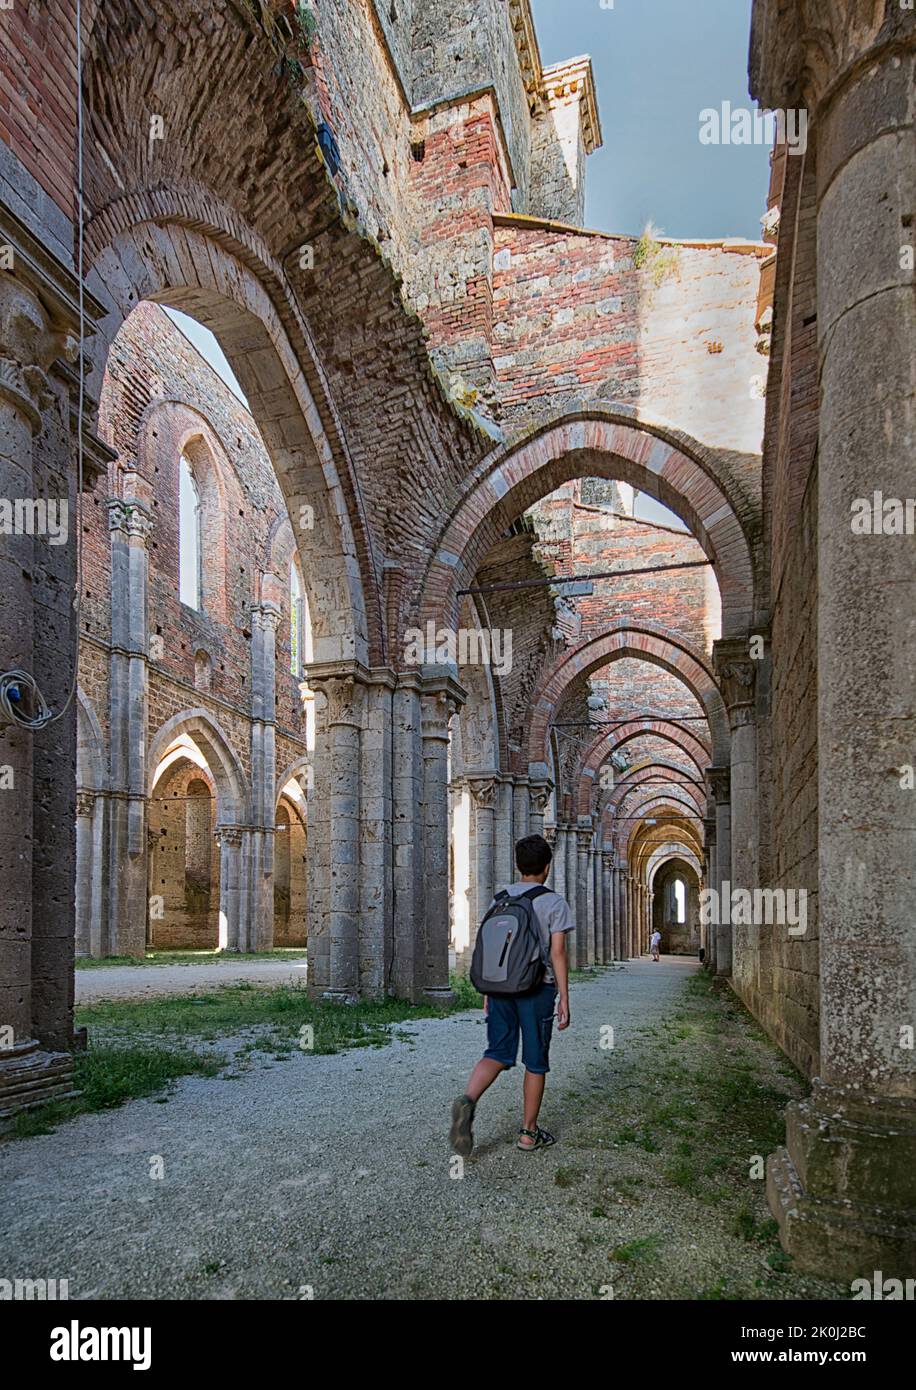 Side nave of the abbey of San Galgano, Chiusdino, Siena, Tuscany; Italy, Europe Stock Photo